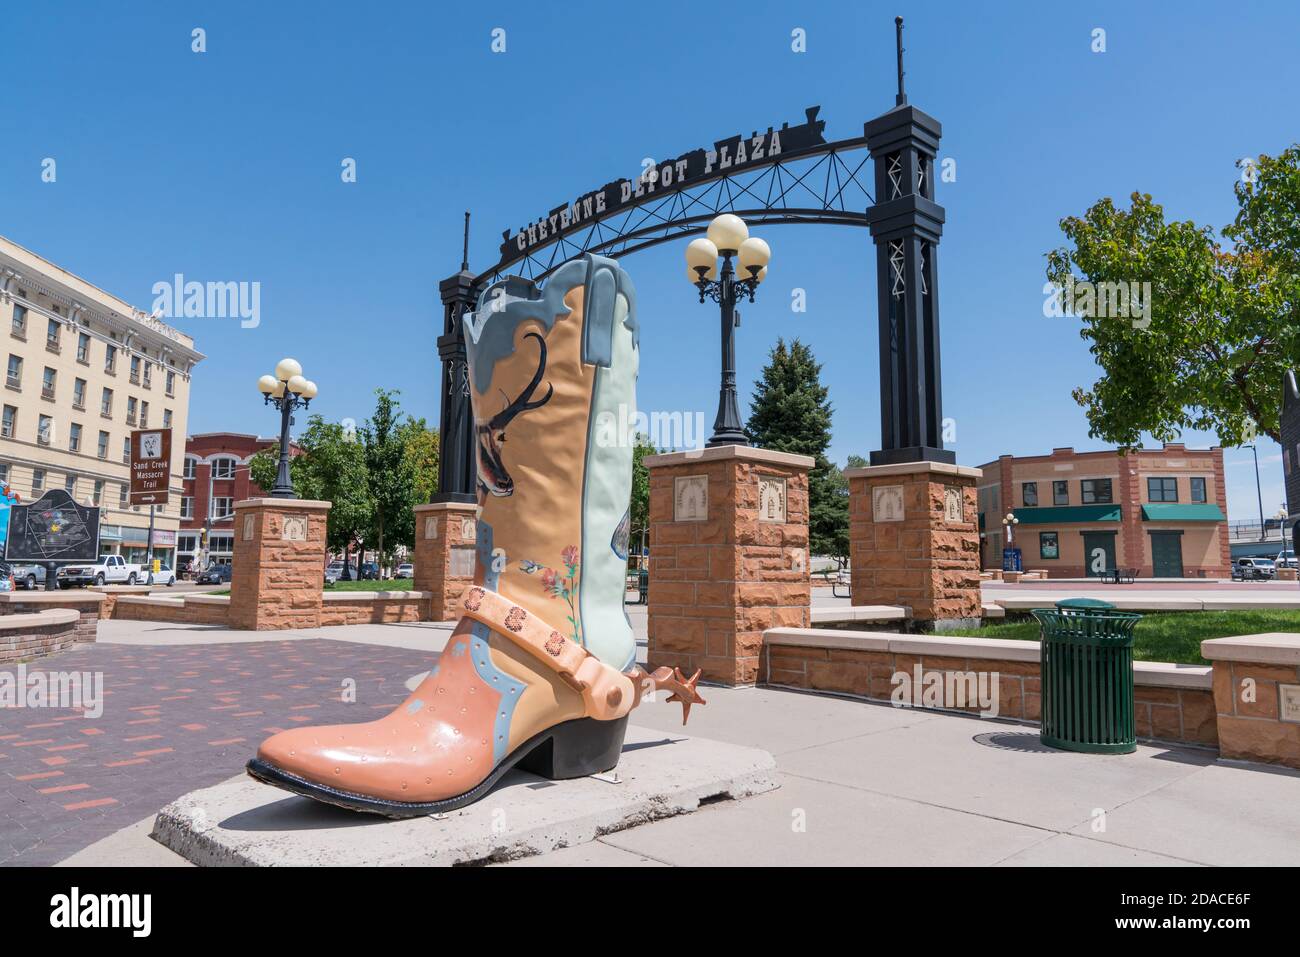 Cheyenne, Wyoming - 8 agosto 2020: Grande scultura d'arte di stivali da cowboy all'esterno nello storico Cheyenne Depot Park nel centro di Cheyenne, Wyoming Foto Stock